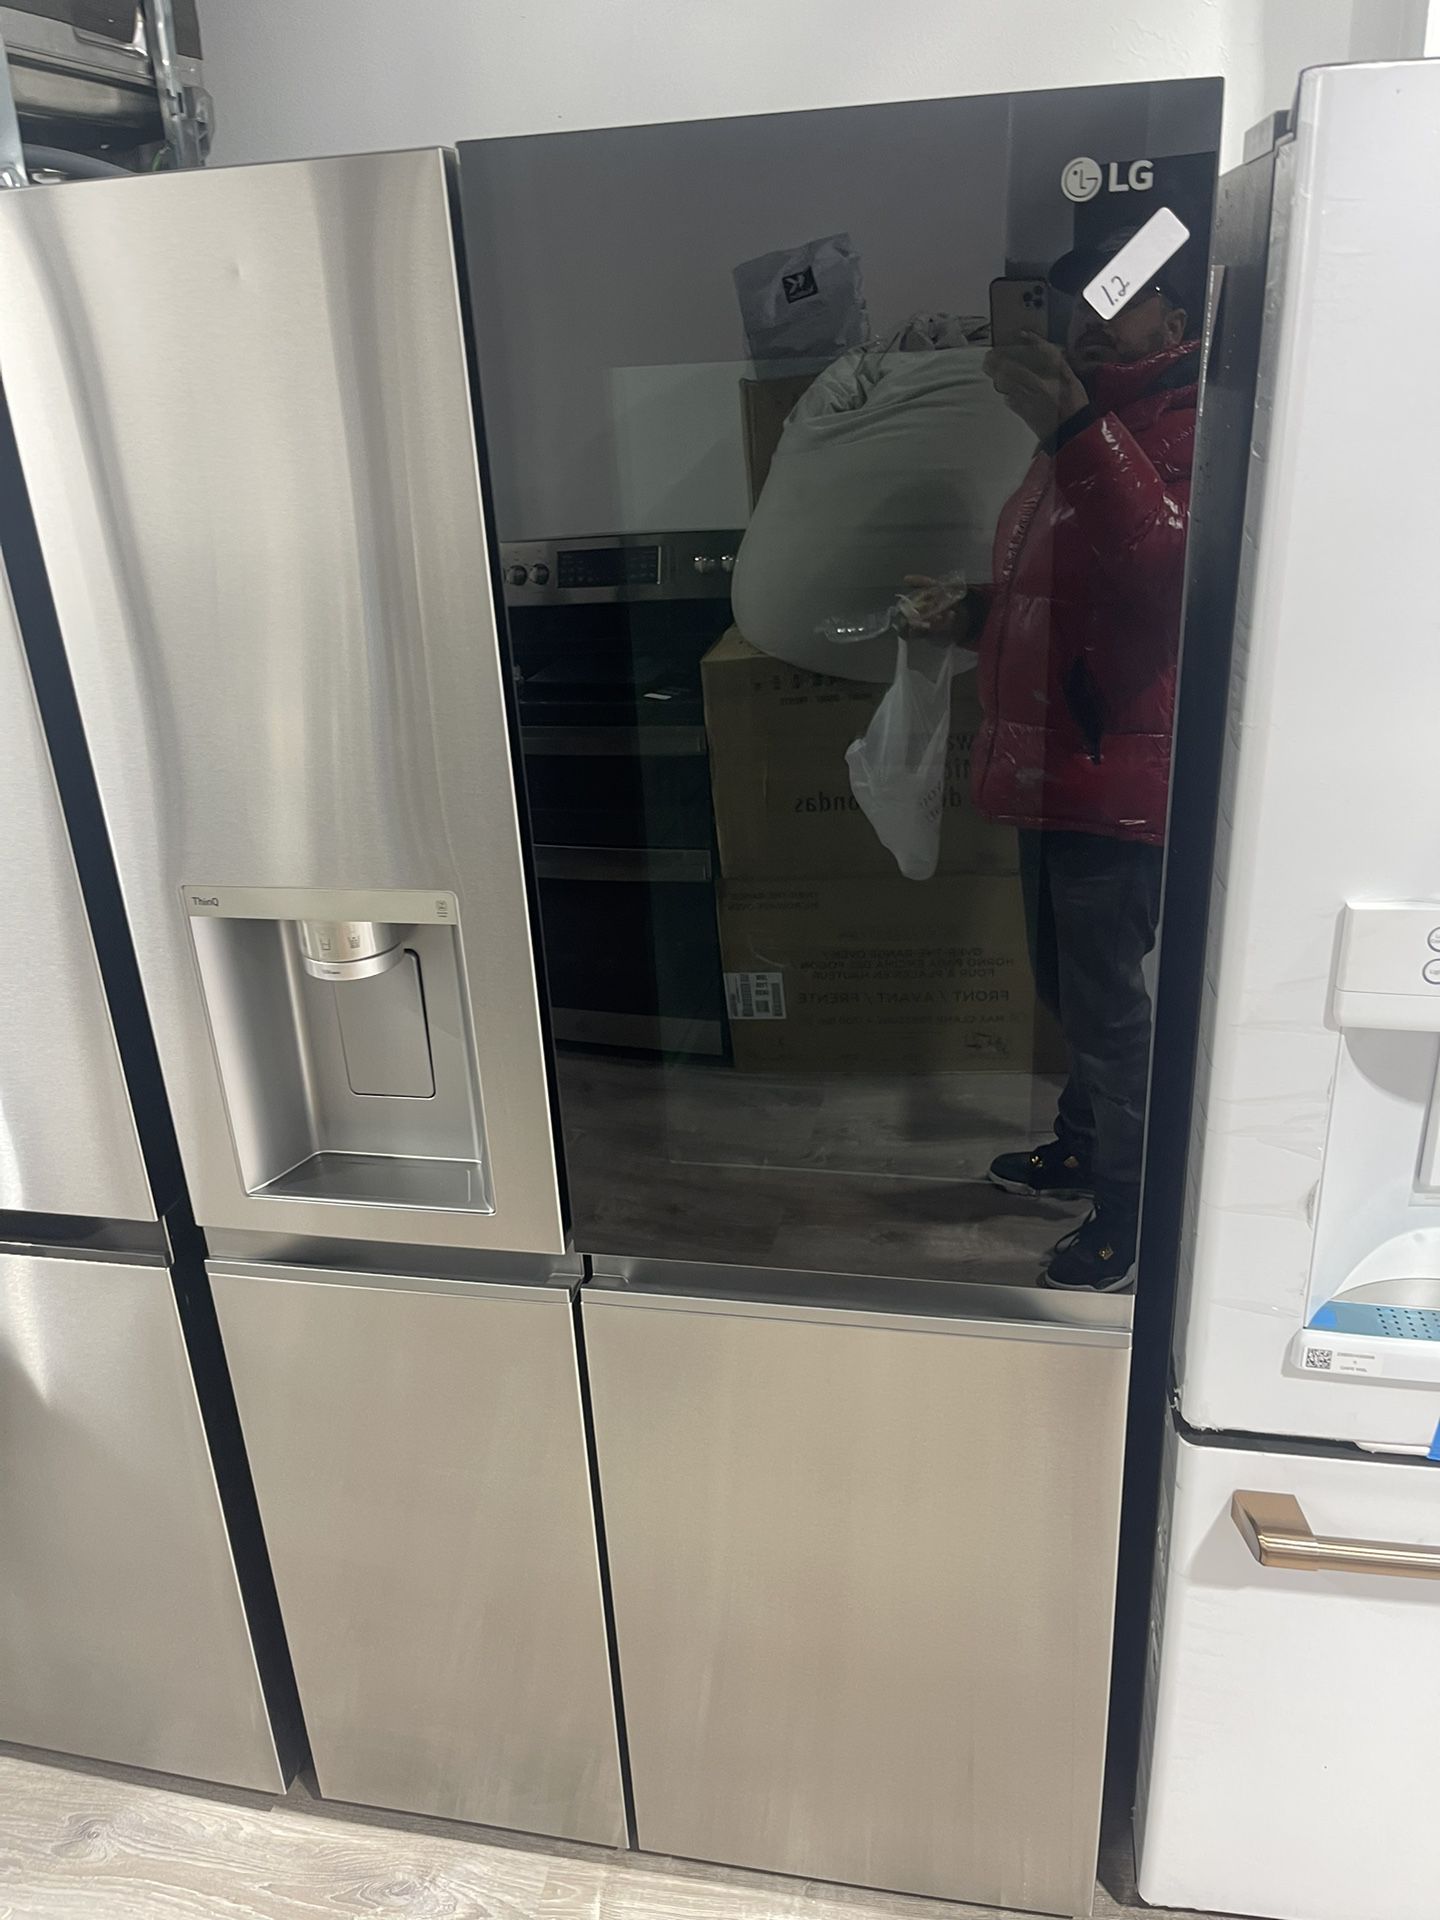 LG New Model Refrigerator 